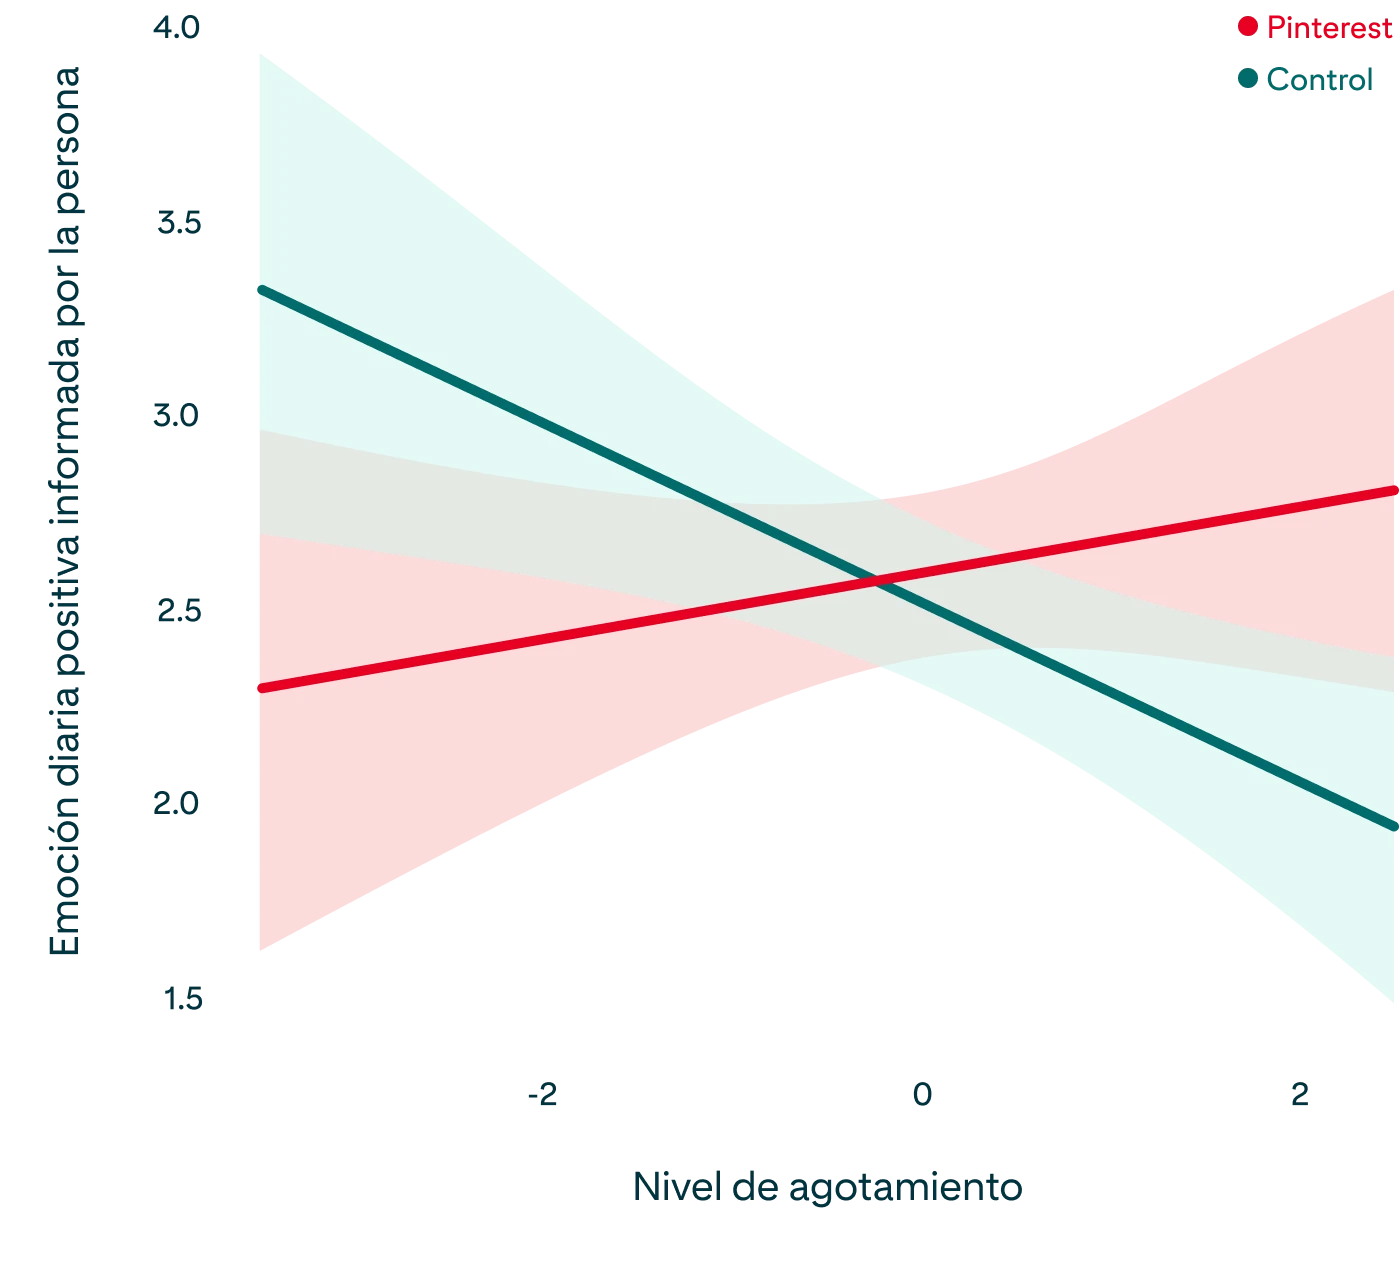  Gráfico que muestra la relación entre los niveles de burnout y las emociones positivas autorreportadas, como se describe en el párrafo anterior 